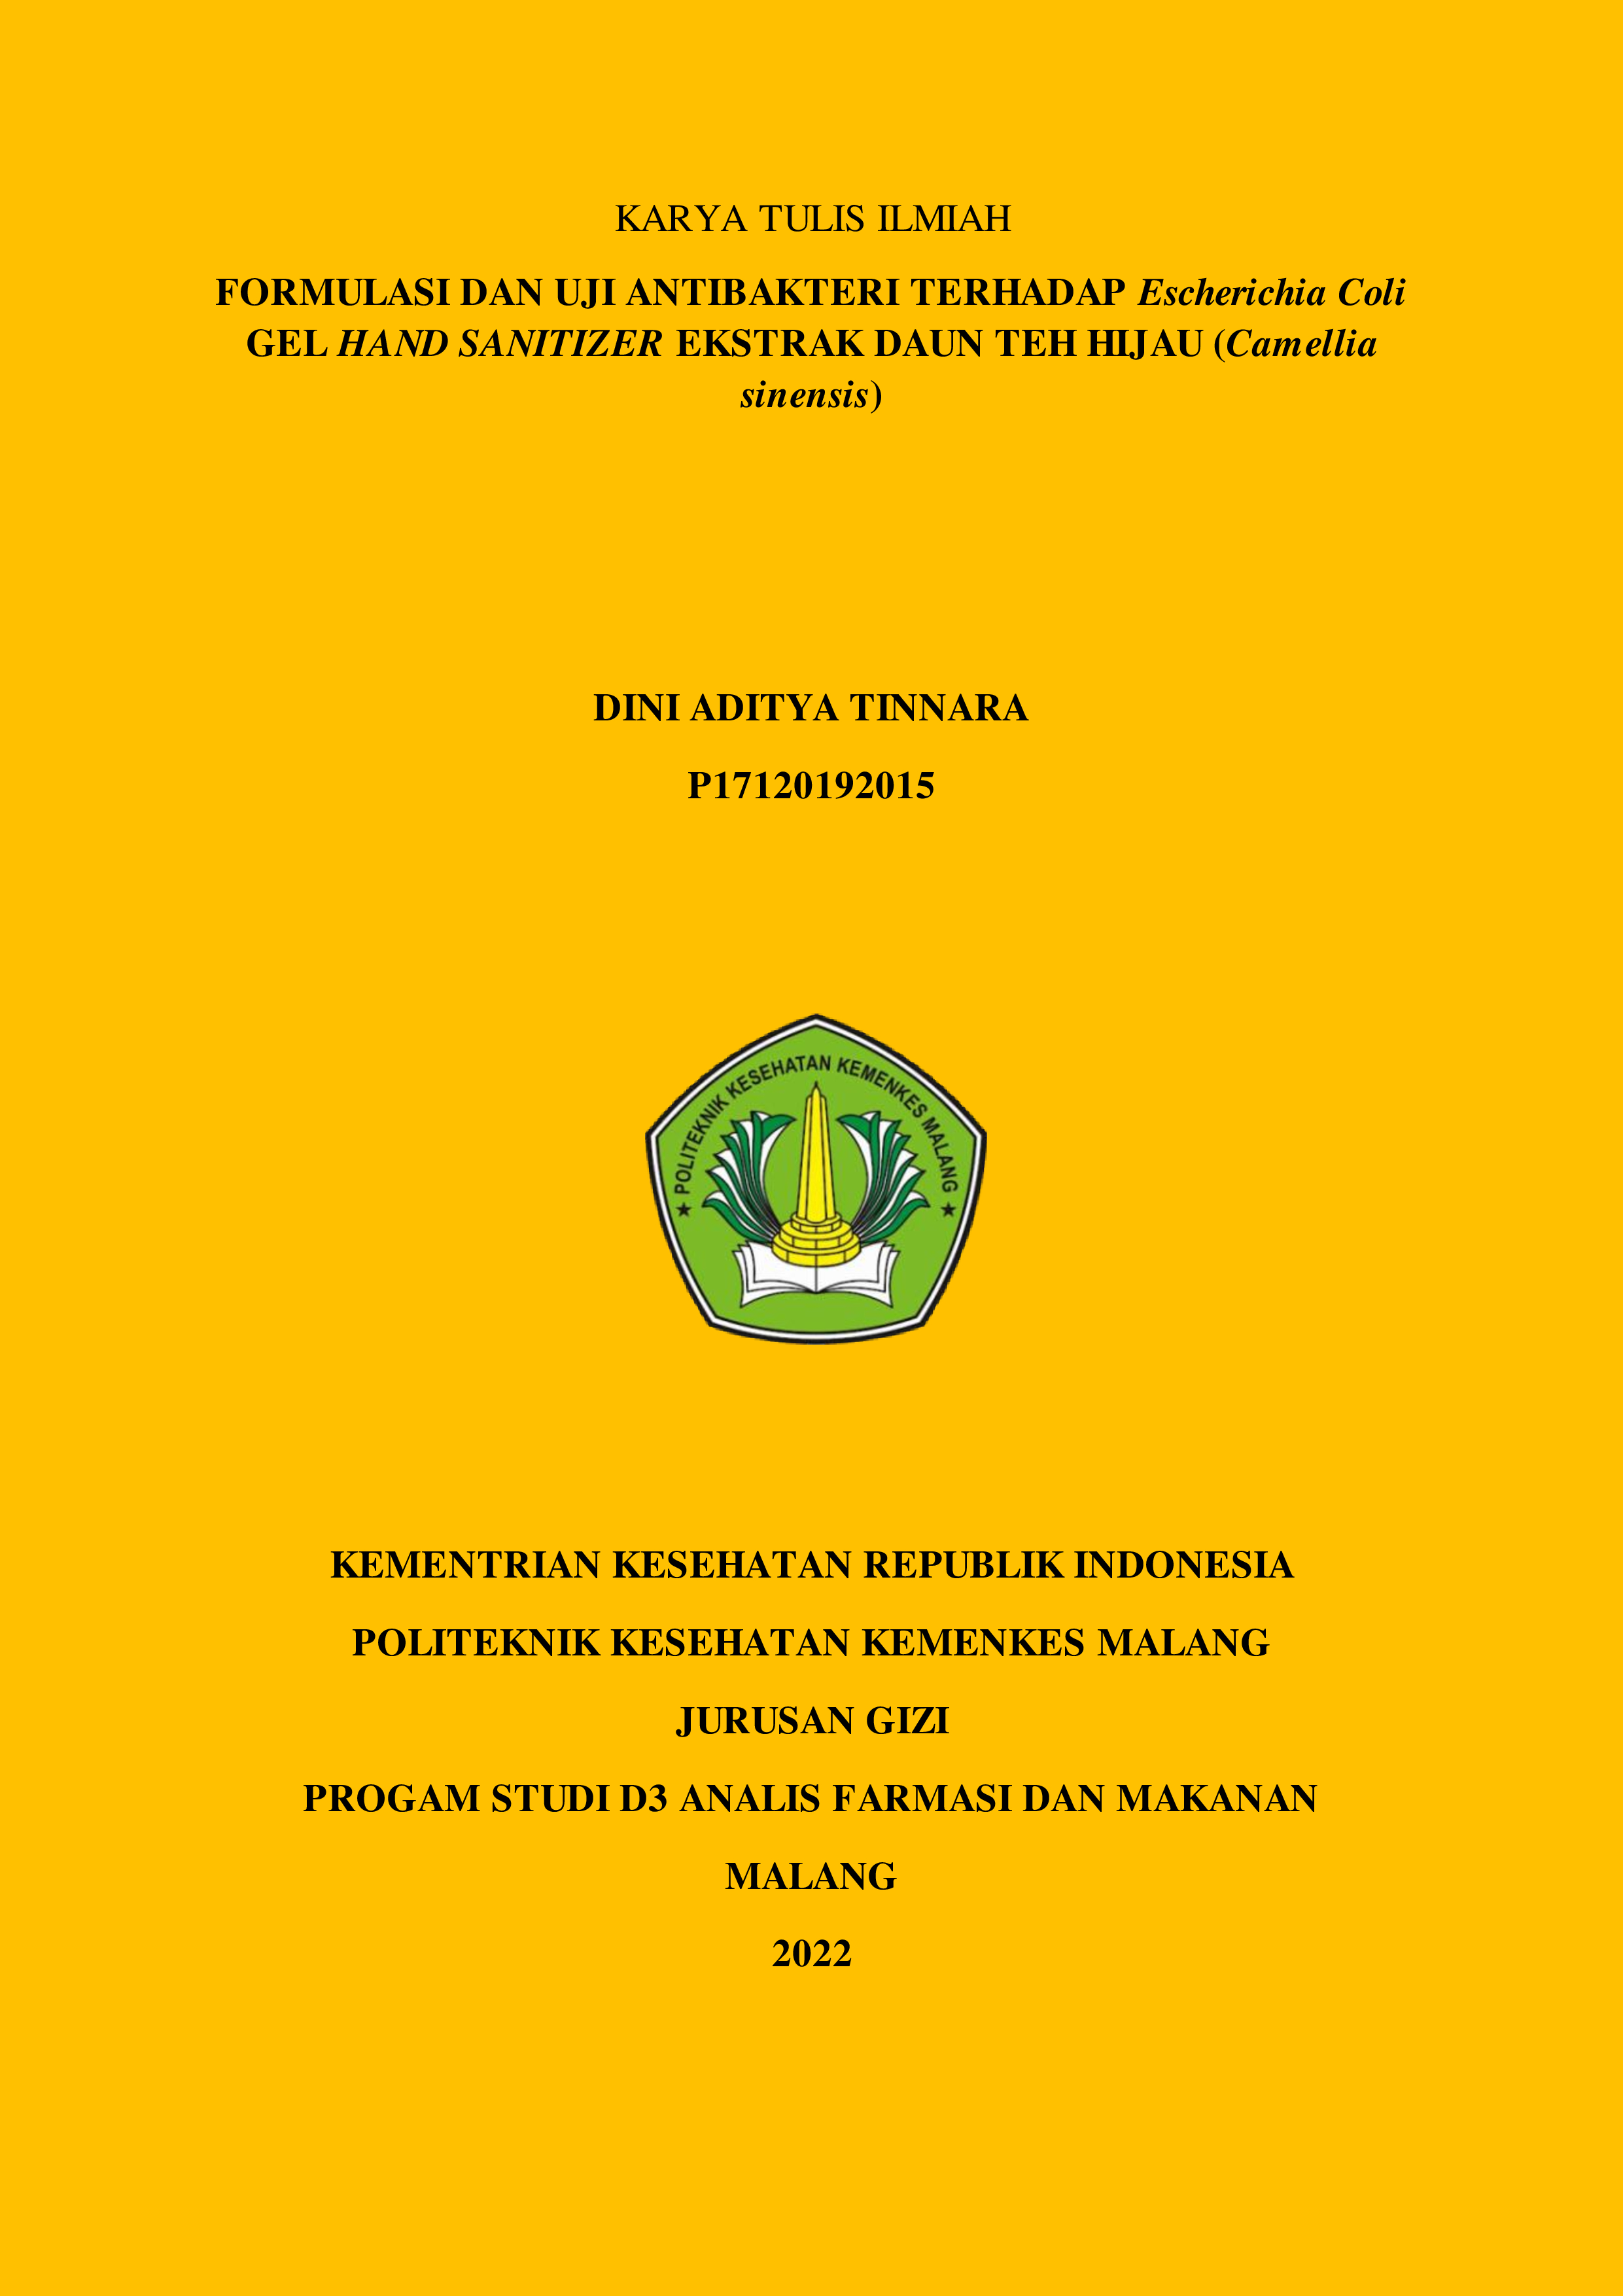 FORMULASI DAN UJI ANTIBAKTERI TERHADAP Escherichia Coli GEL HAND SANITIZER EKSTRAK DAUN TEH HIJAU (Camellia sinensis) (2022)